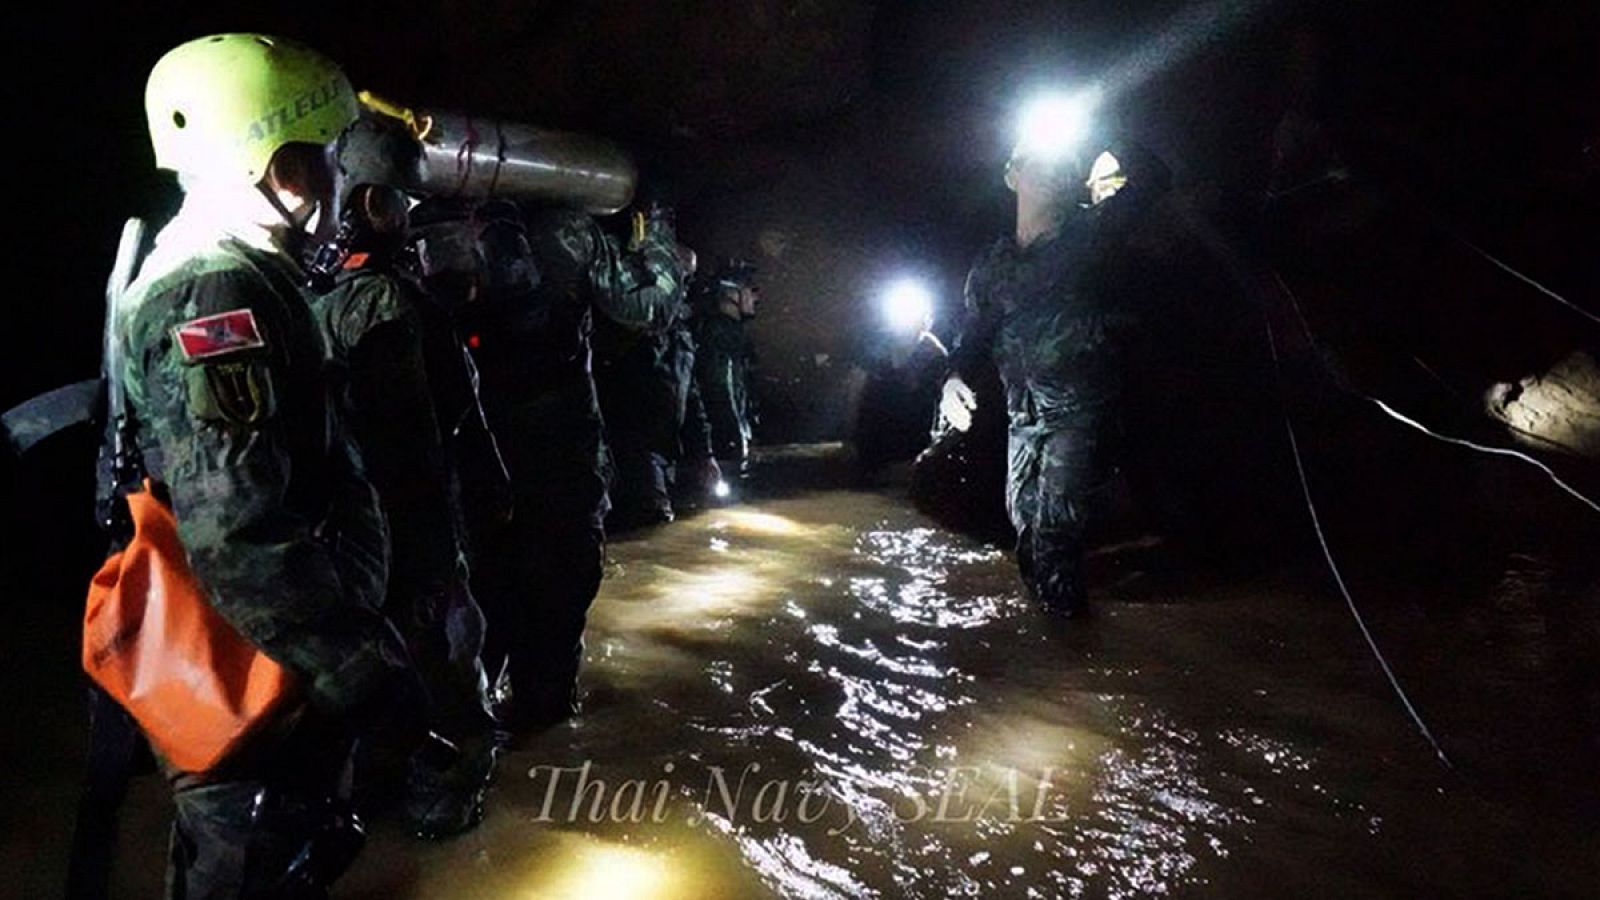 Fotografía cedida por la marina tailandesa que muestra personal militar tailandés mientras transportan materiales durante las operaciones de rescate.